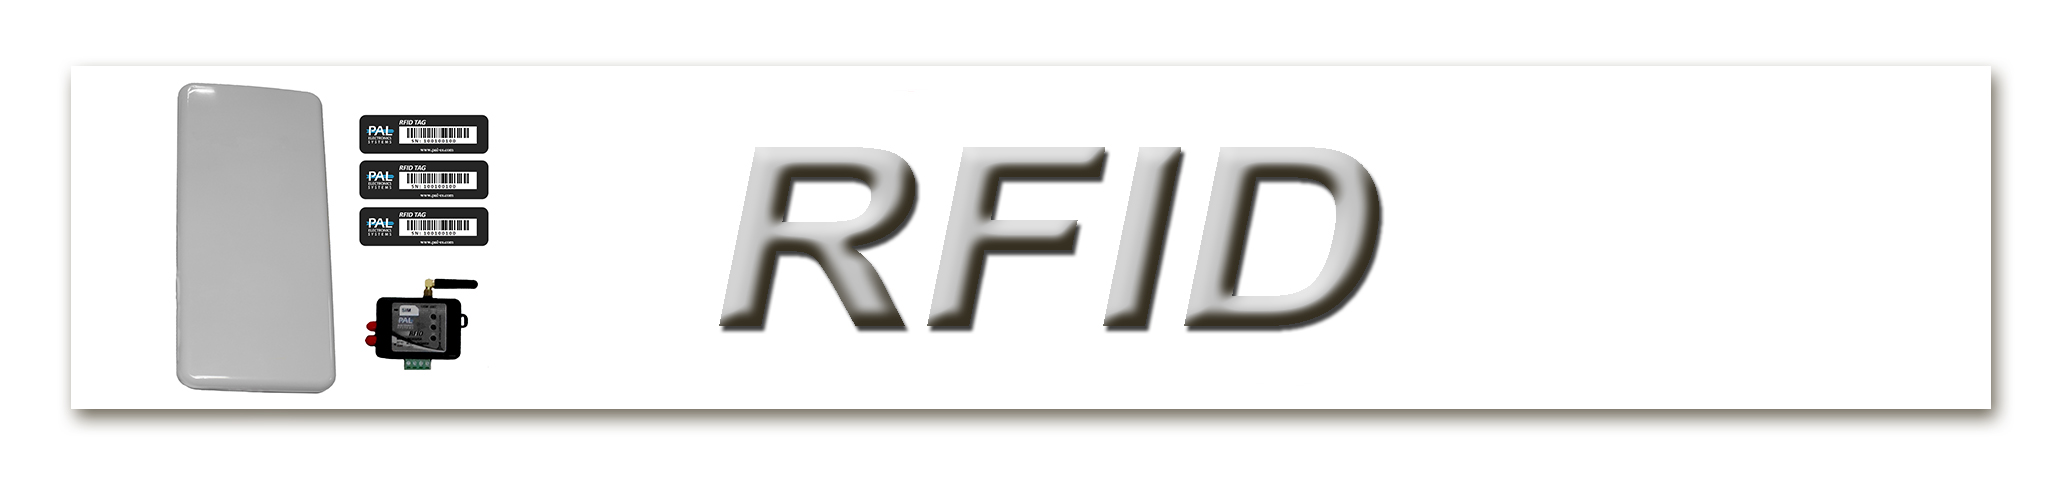 Система контроля доступа по RFID меткам